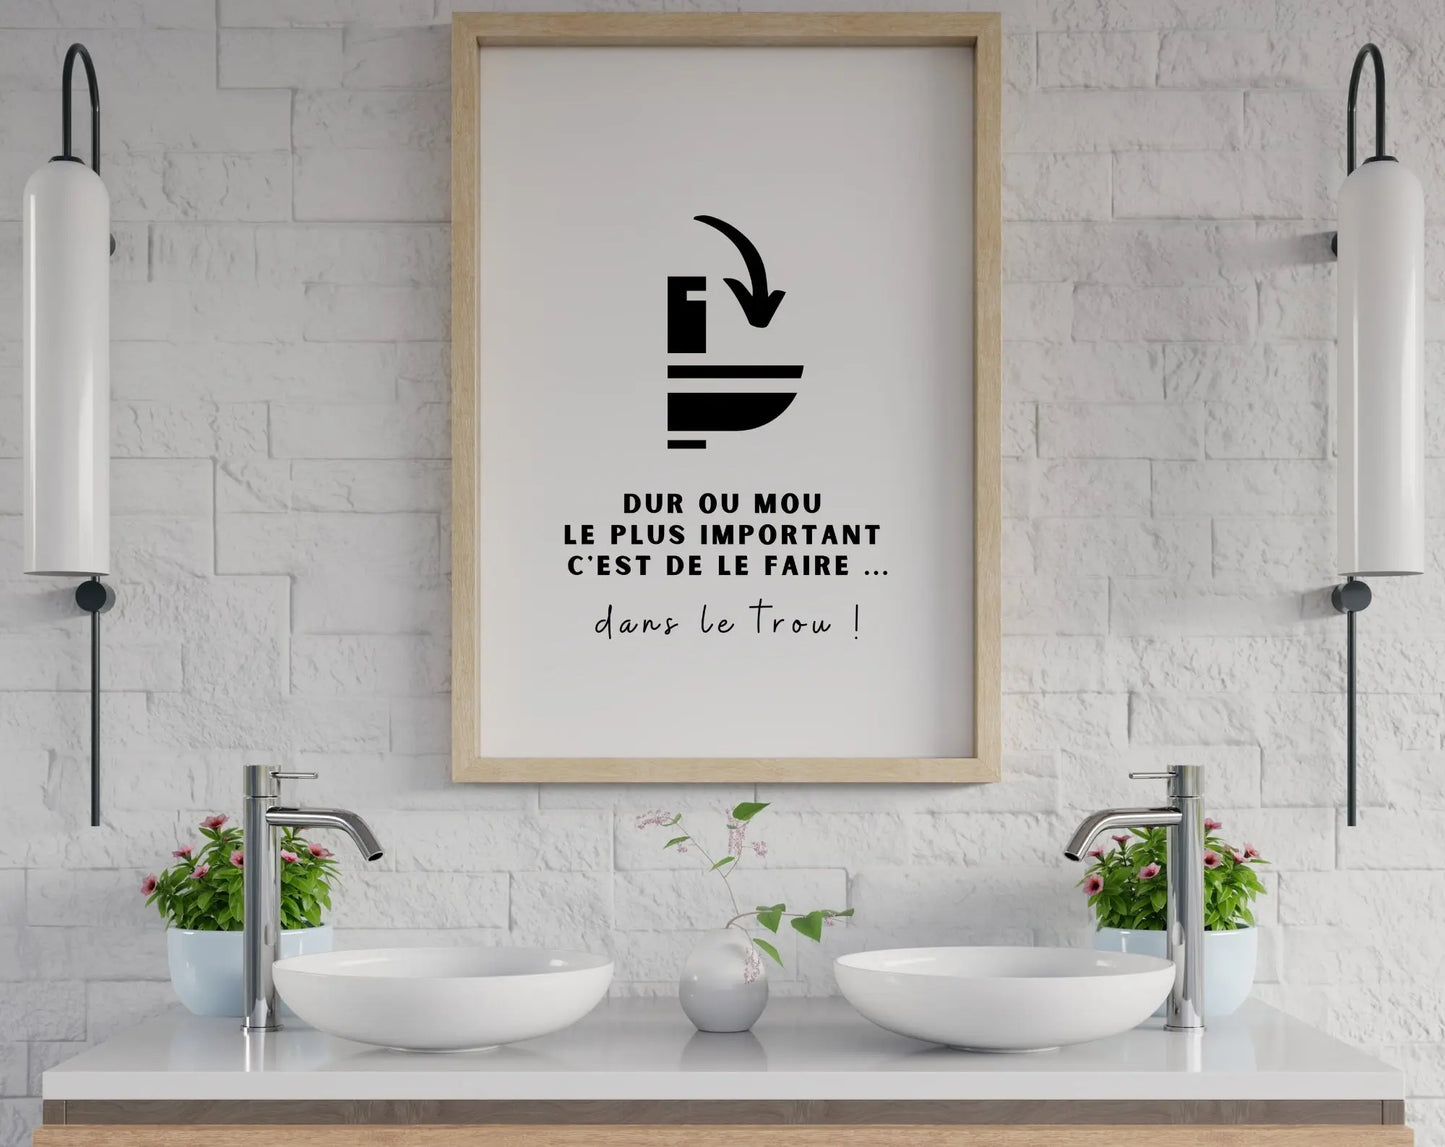 Affiche toilettes Dur ou mou le plus ... dans le trou - Poster minimaliste WC et salle de bain à imprimer - Décoration murale moderne FLTMfrance